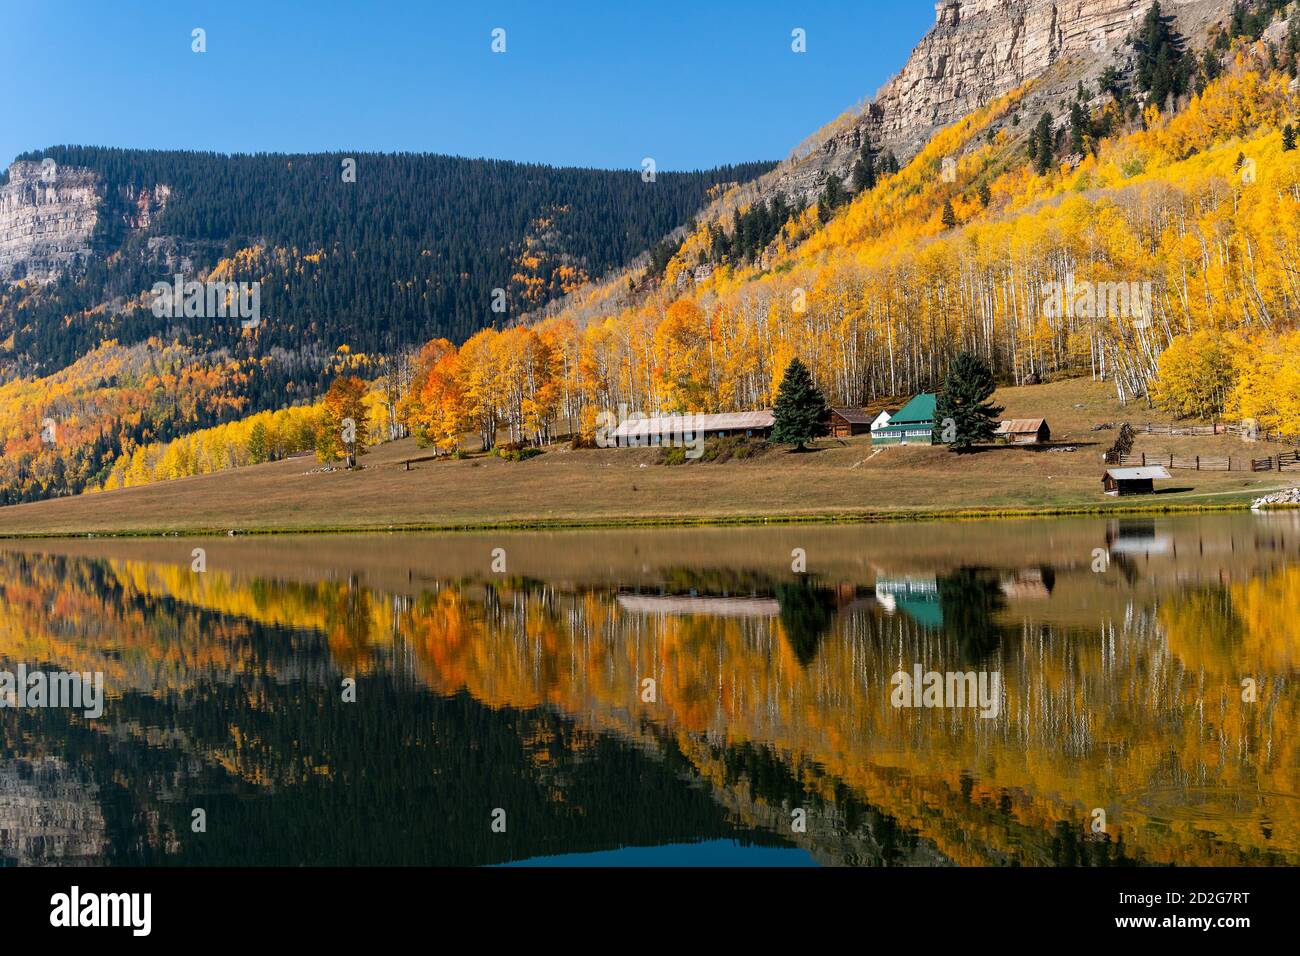 Une cabane reflète un paysage d'automne pittoresque dans l'eau d'un lac de montagne calme près de Durango, Colorado, USA Banque D'Images